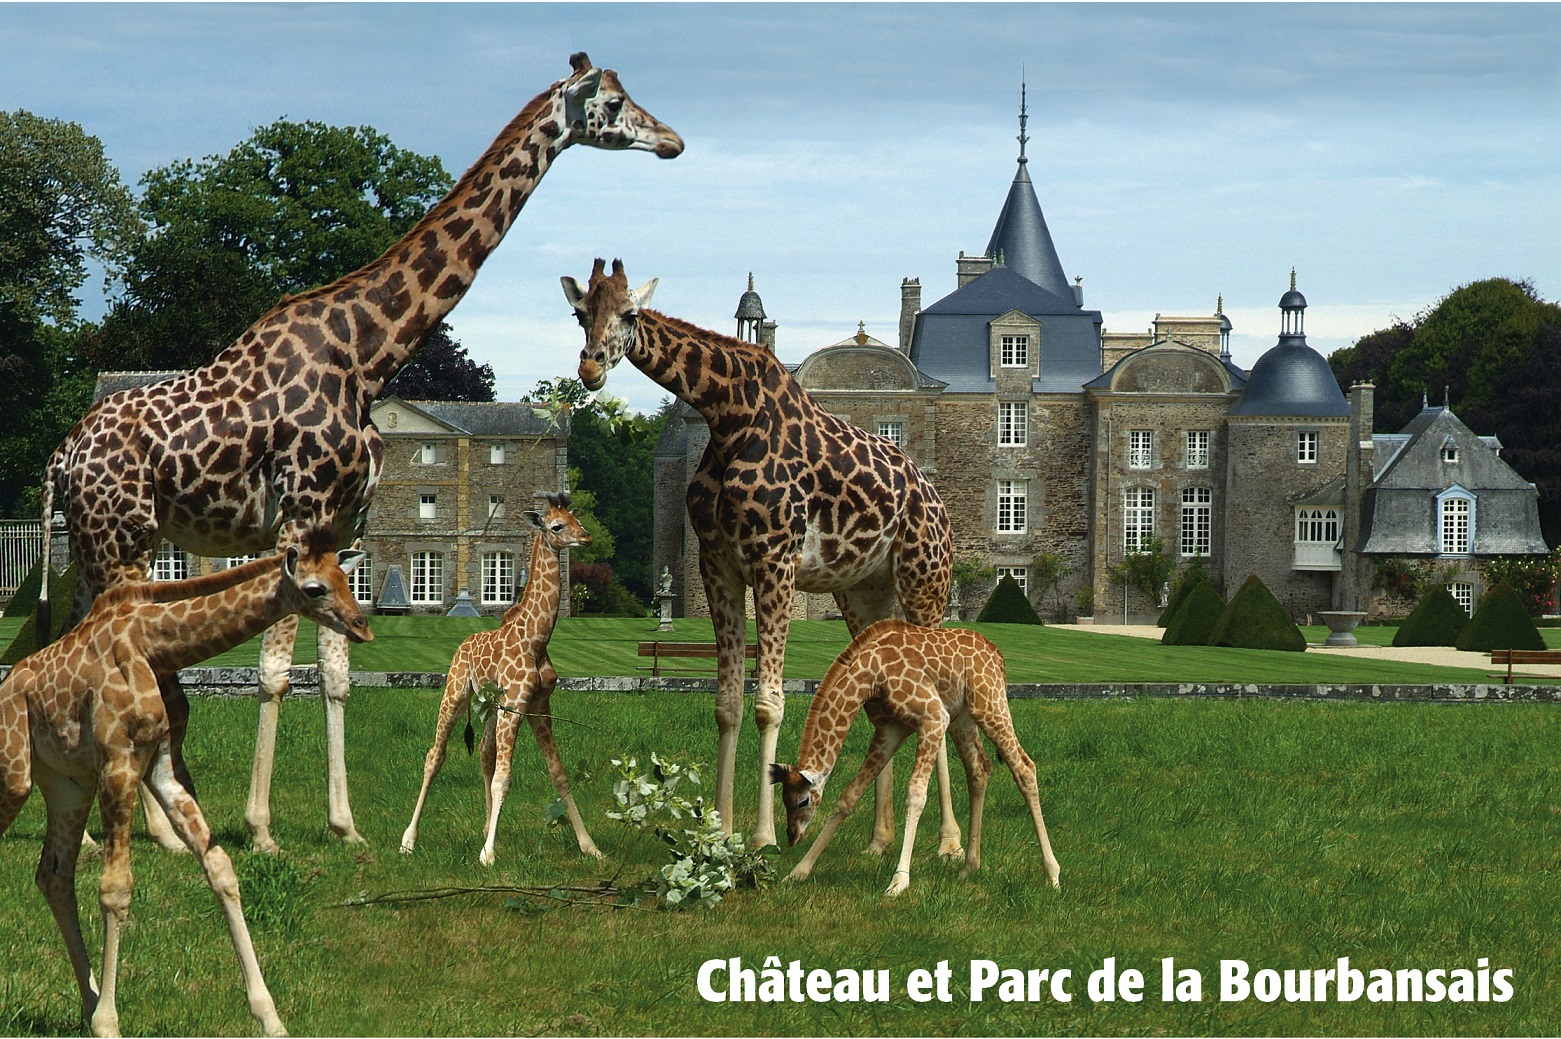 Le site de la Bourbansais propose de découvrir un zoo et un château en un même lieu - Vacances accessibles en Bretagne © Château et parc de la Bourbansais